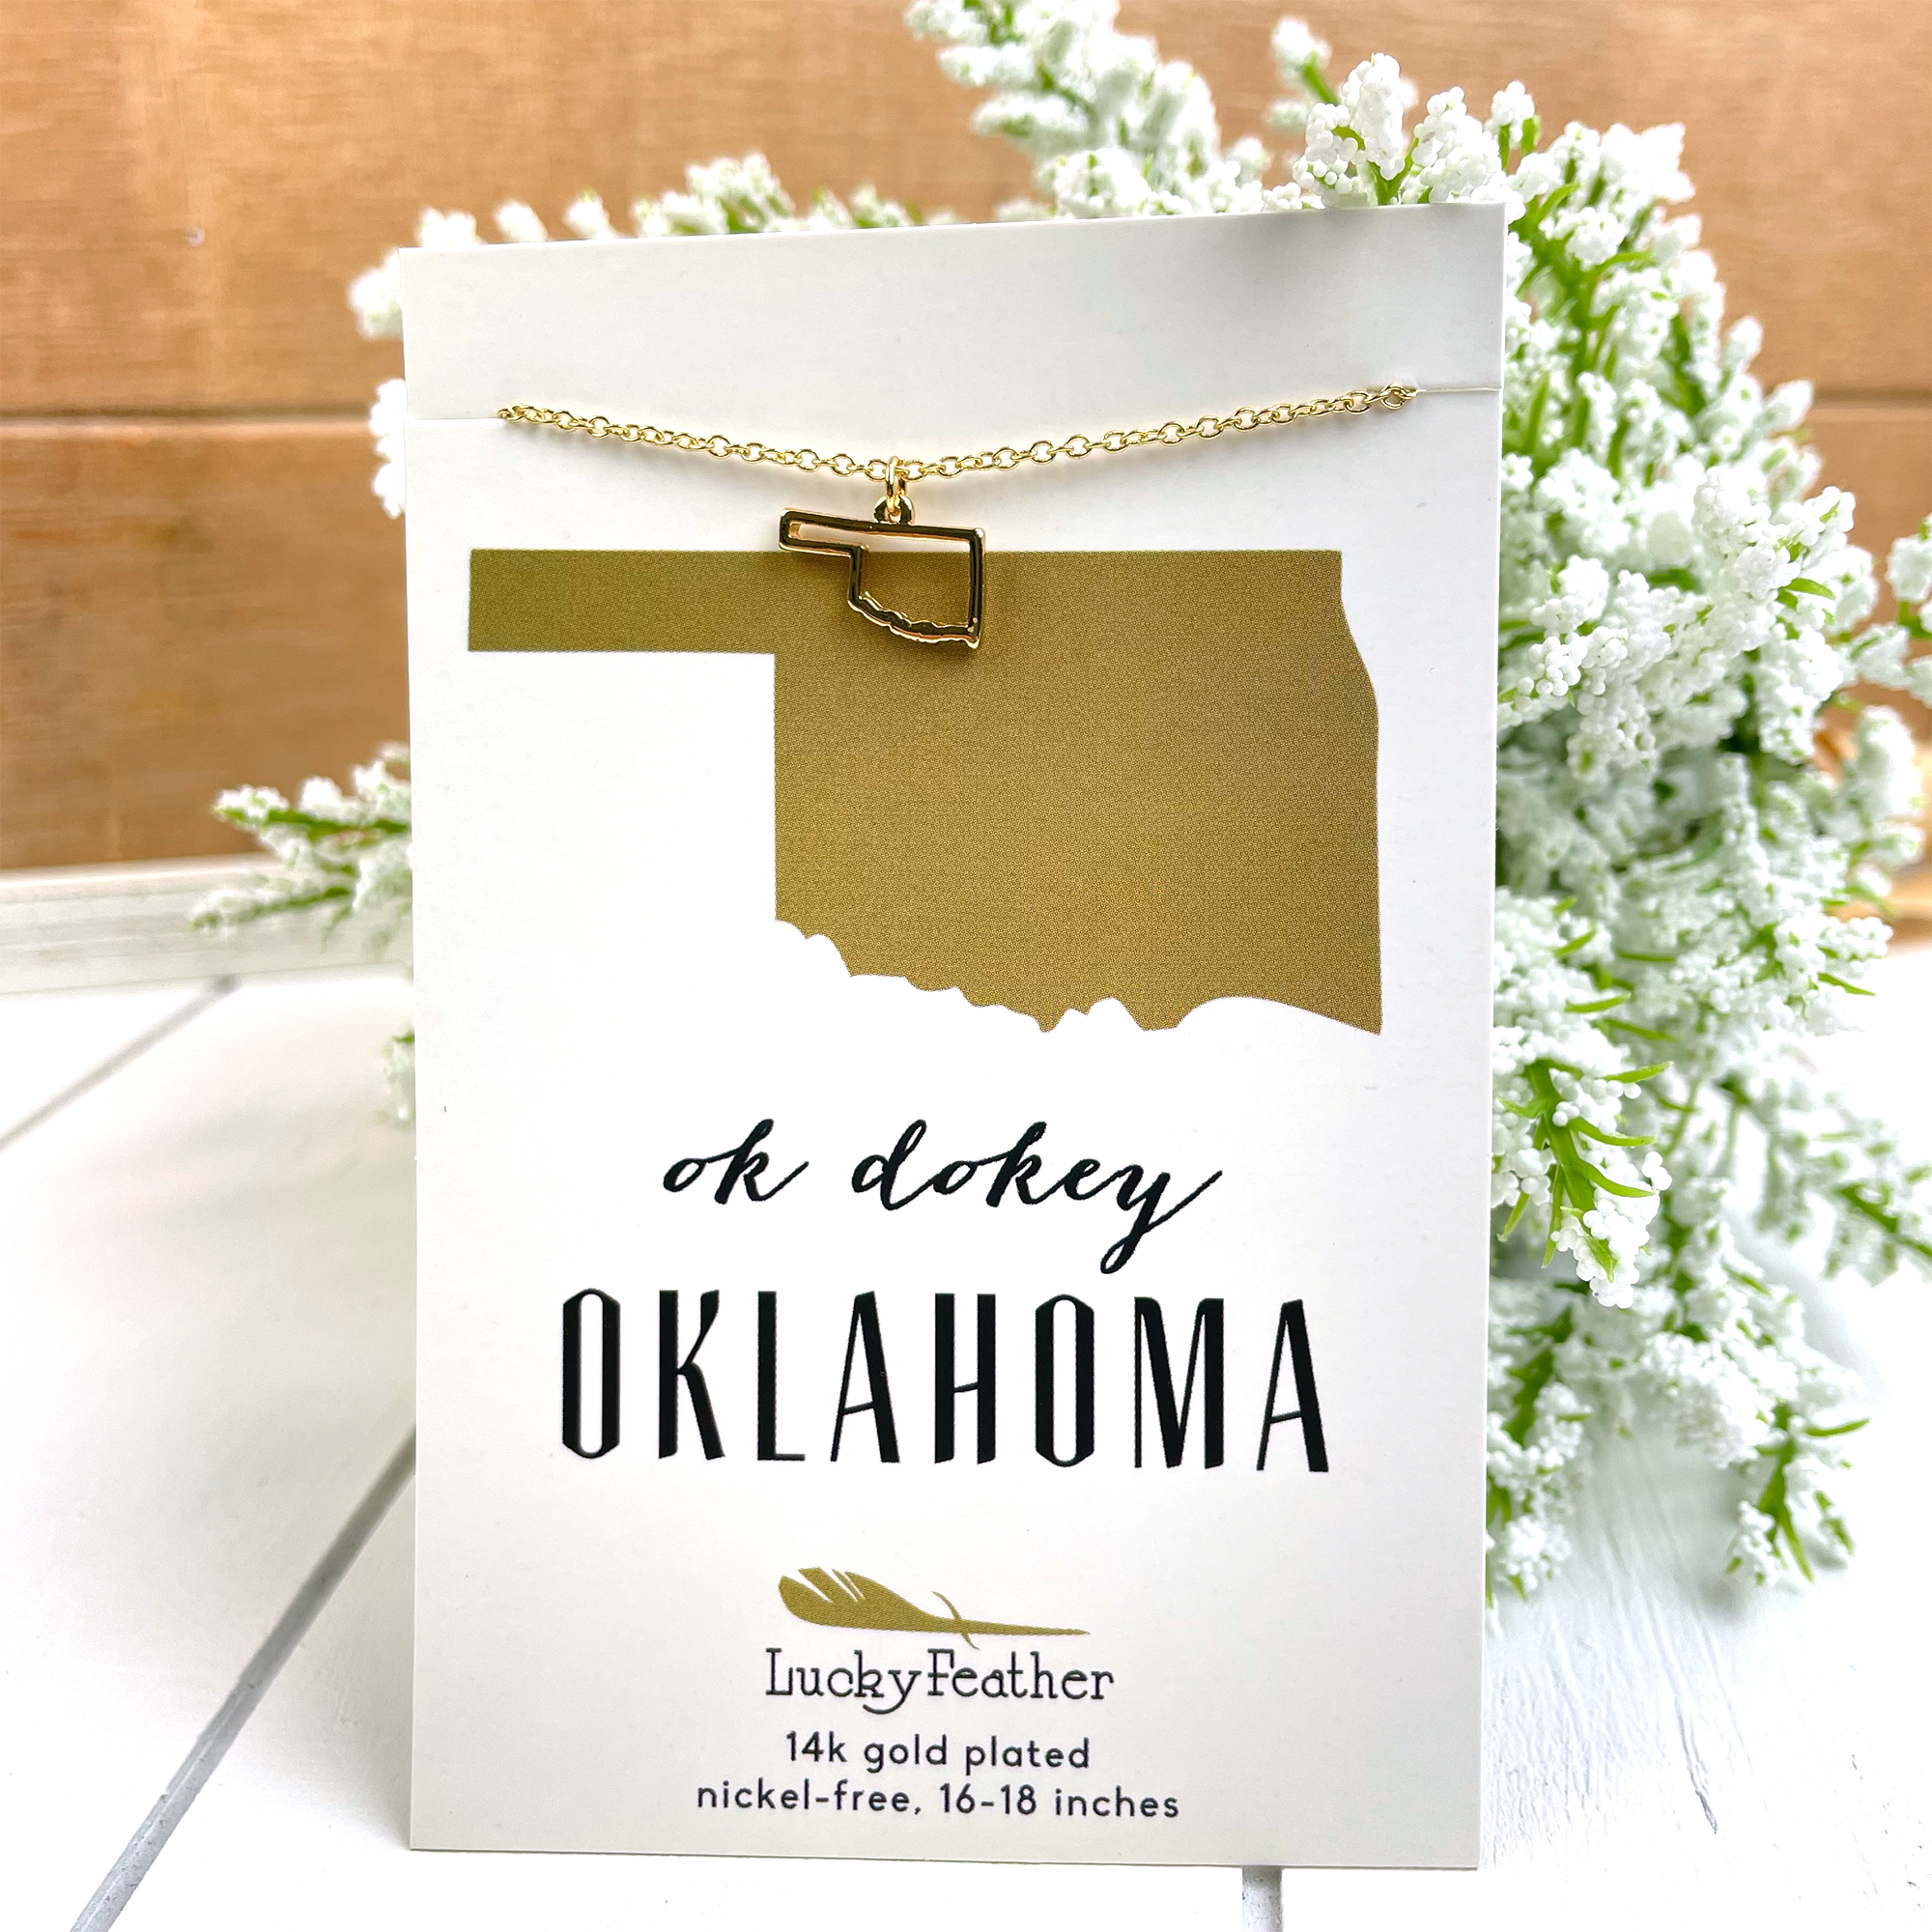 Oklahoma State Minimalist Necklace - Go Greek Chic